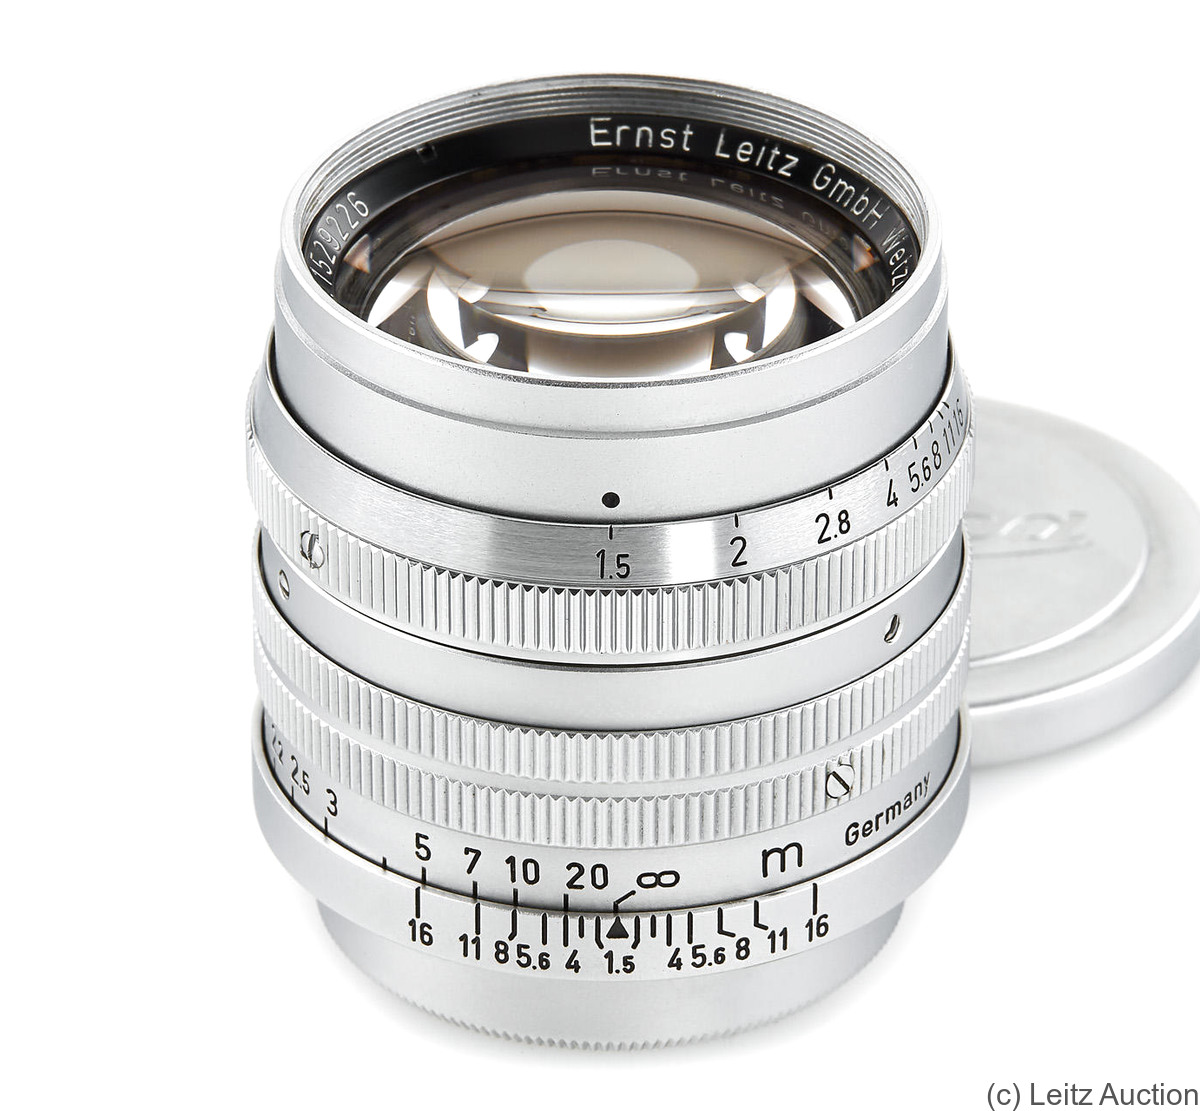 Leitz: 50mm (5cm) f1.5 Summarit (SM) camera